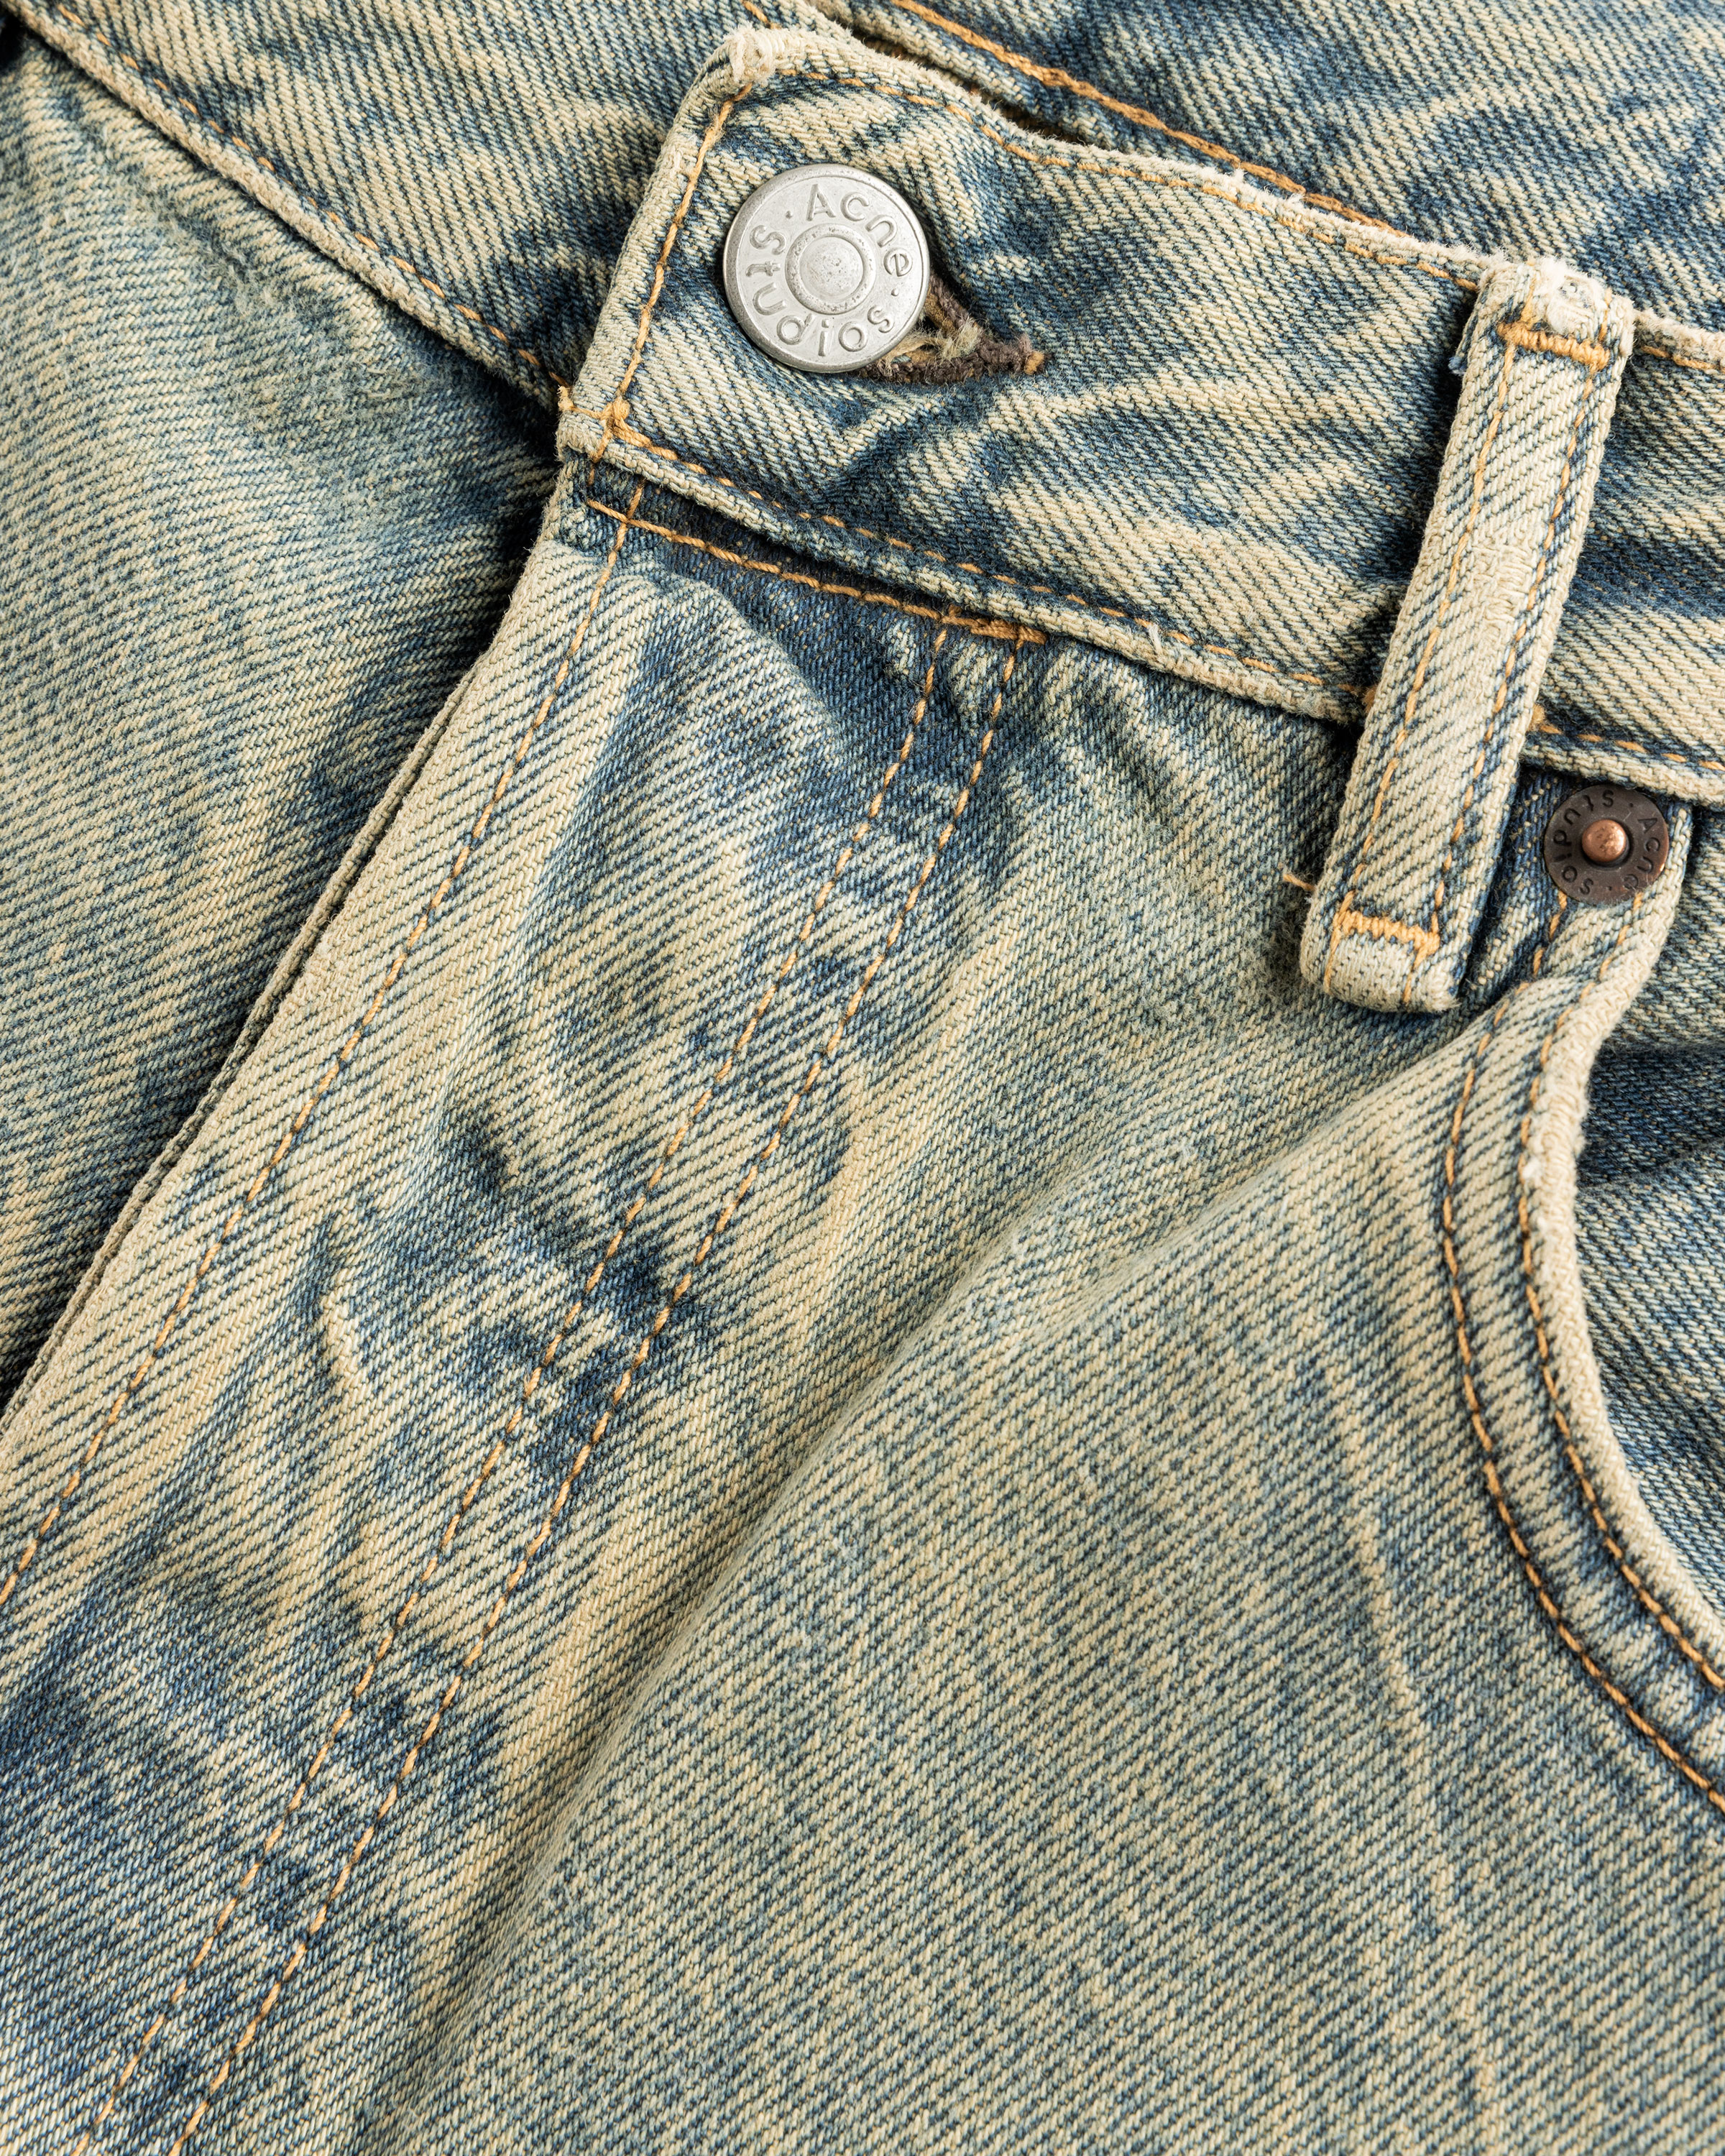 Acne Studios – Loose Fit Jeans 2021M Blue/Beige - Pants - Blue - Image 6